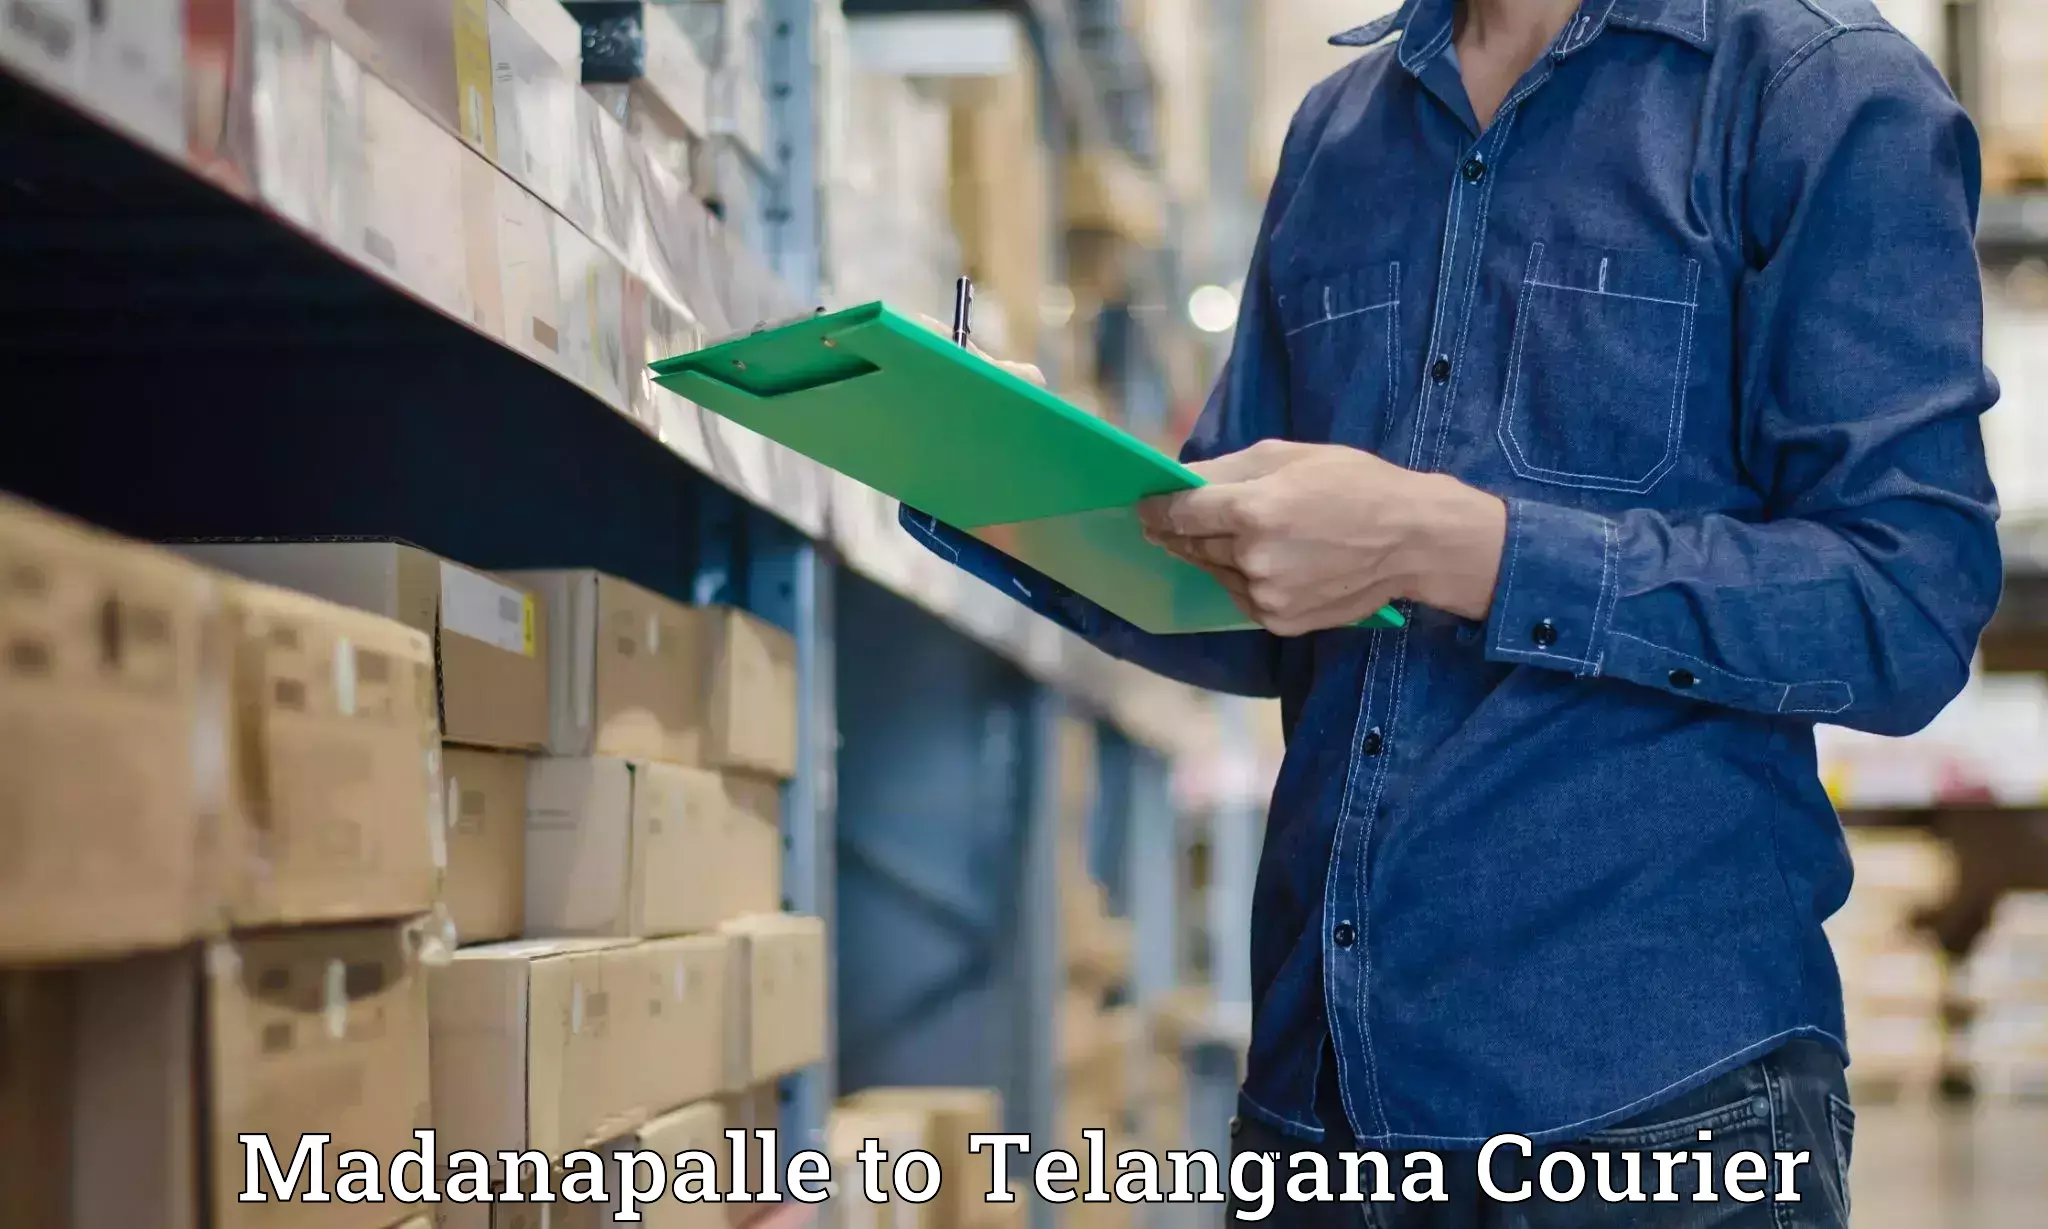 Efficient cargo handling Madanapalle to Warangal